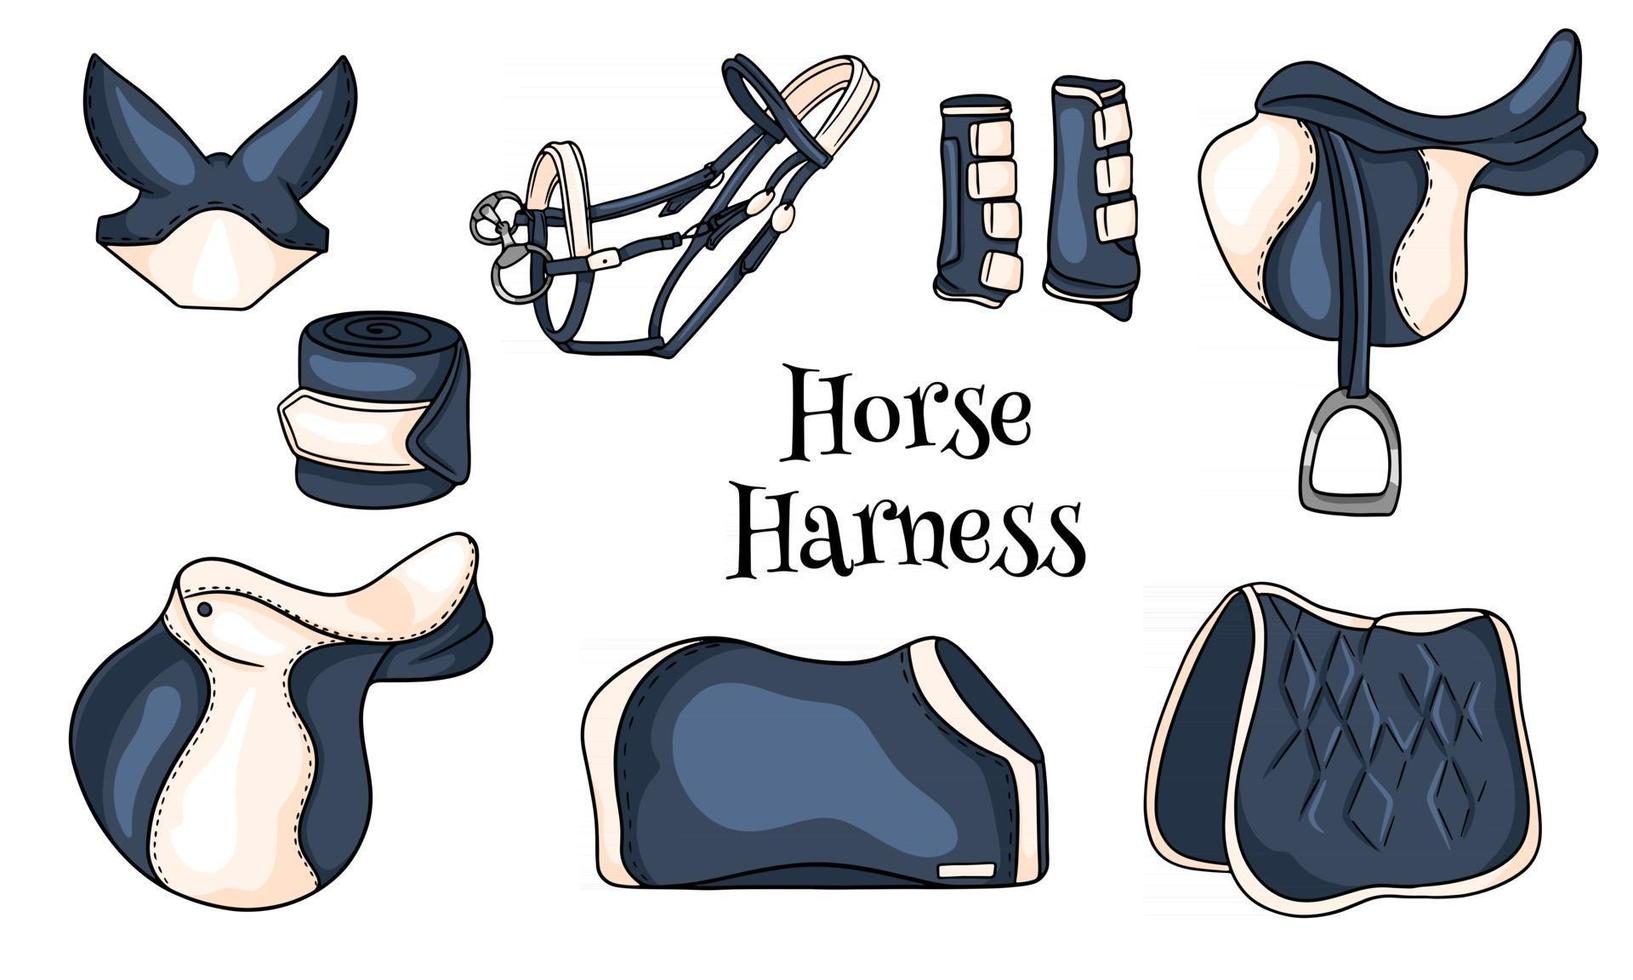 Horse harness a set of equestrian equipment vector